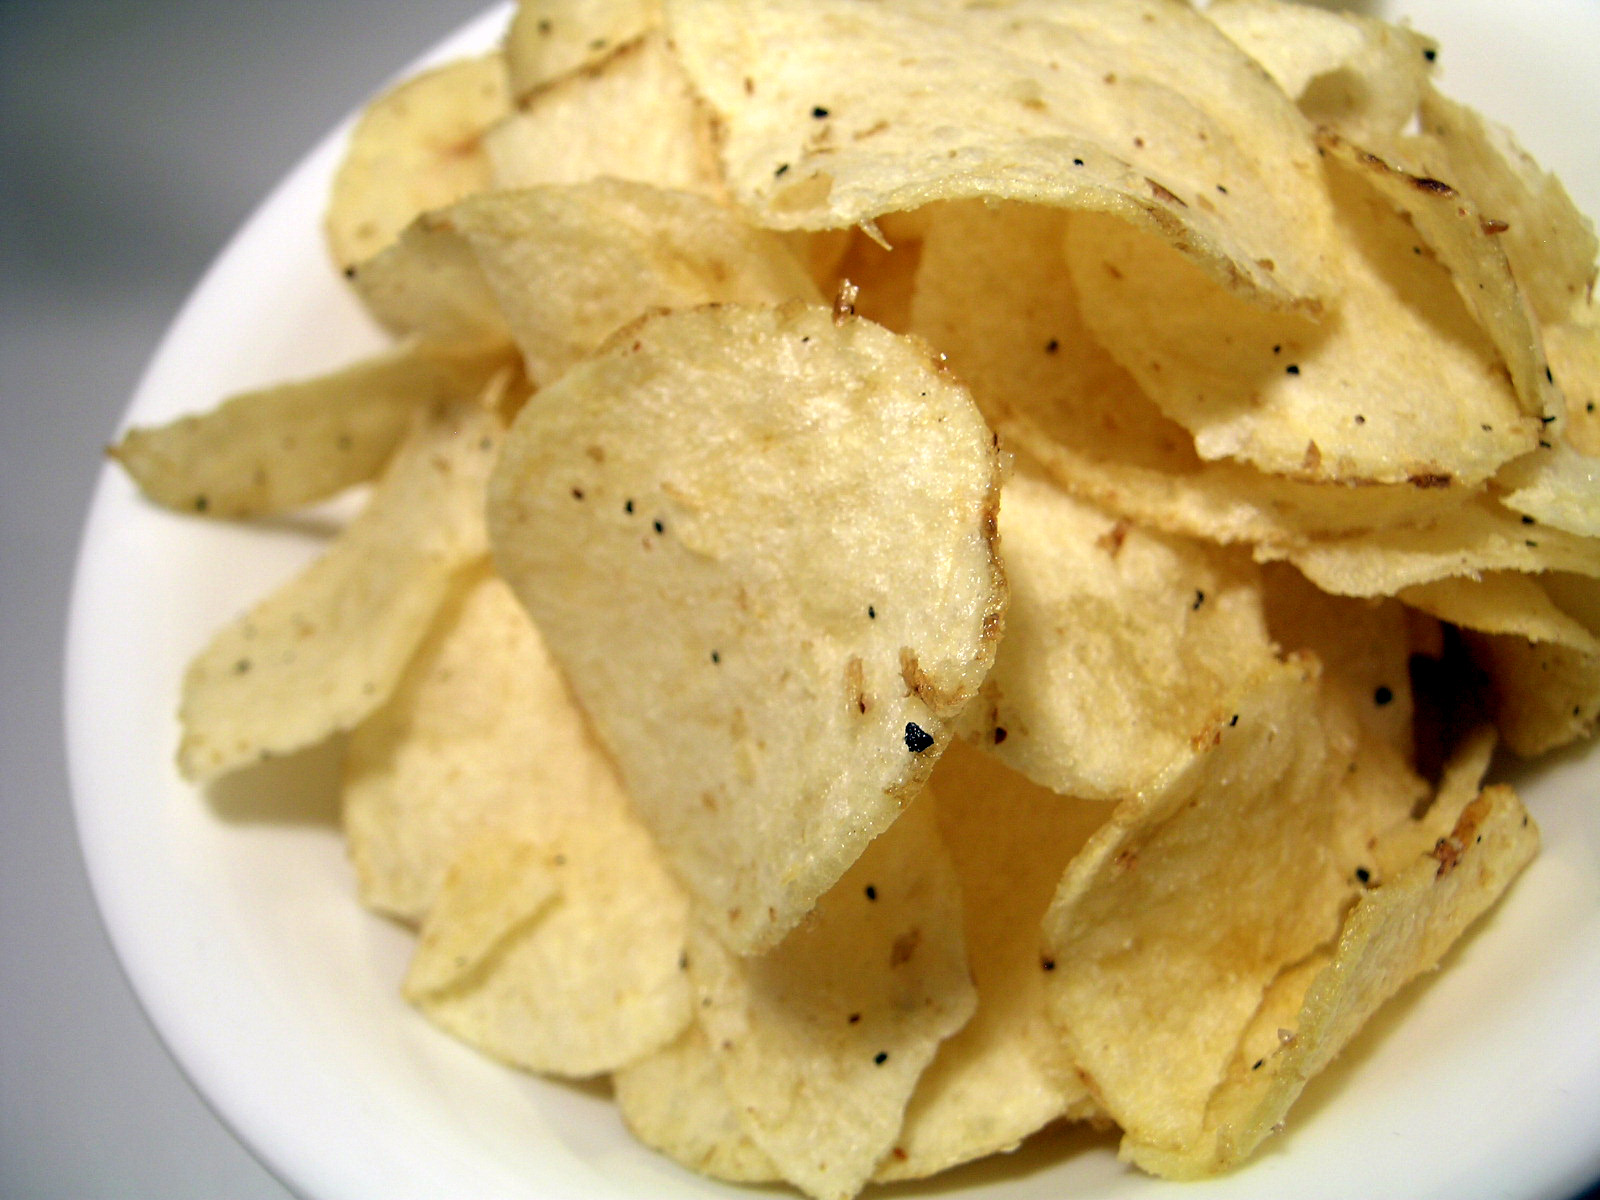 ¿Quién y cuándo se inventaron las patatas fritas? 1853, George Crum